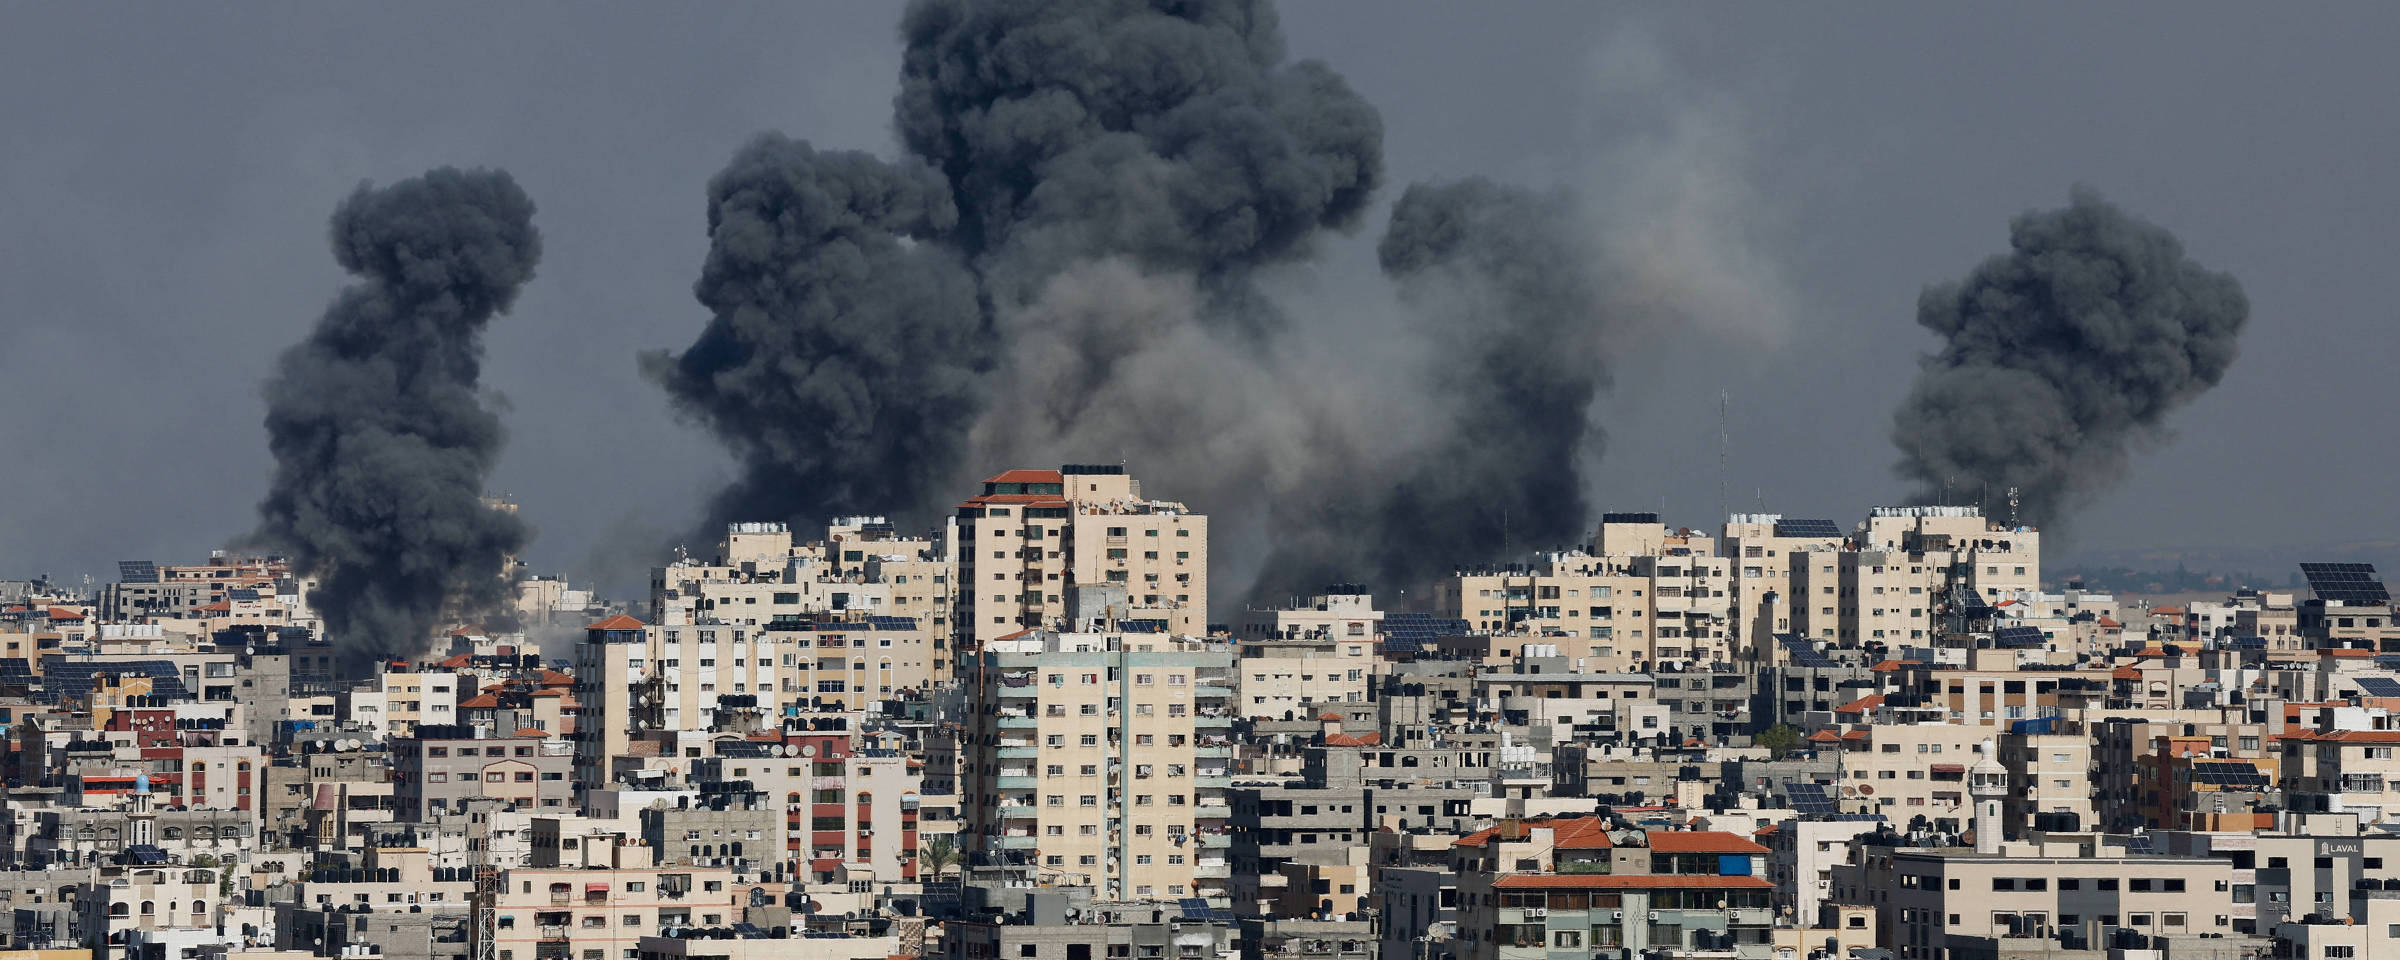 Fumaça em prédios de Gaza após ataque de Israel na região, em resposta à ofensiva do Hamas Mohammed Salem.